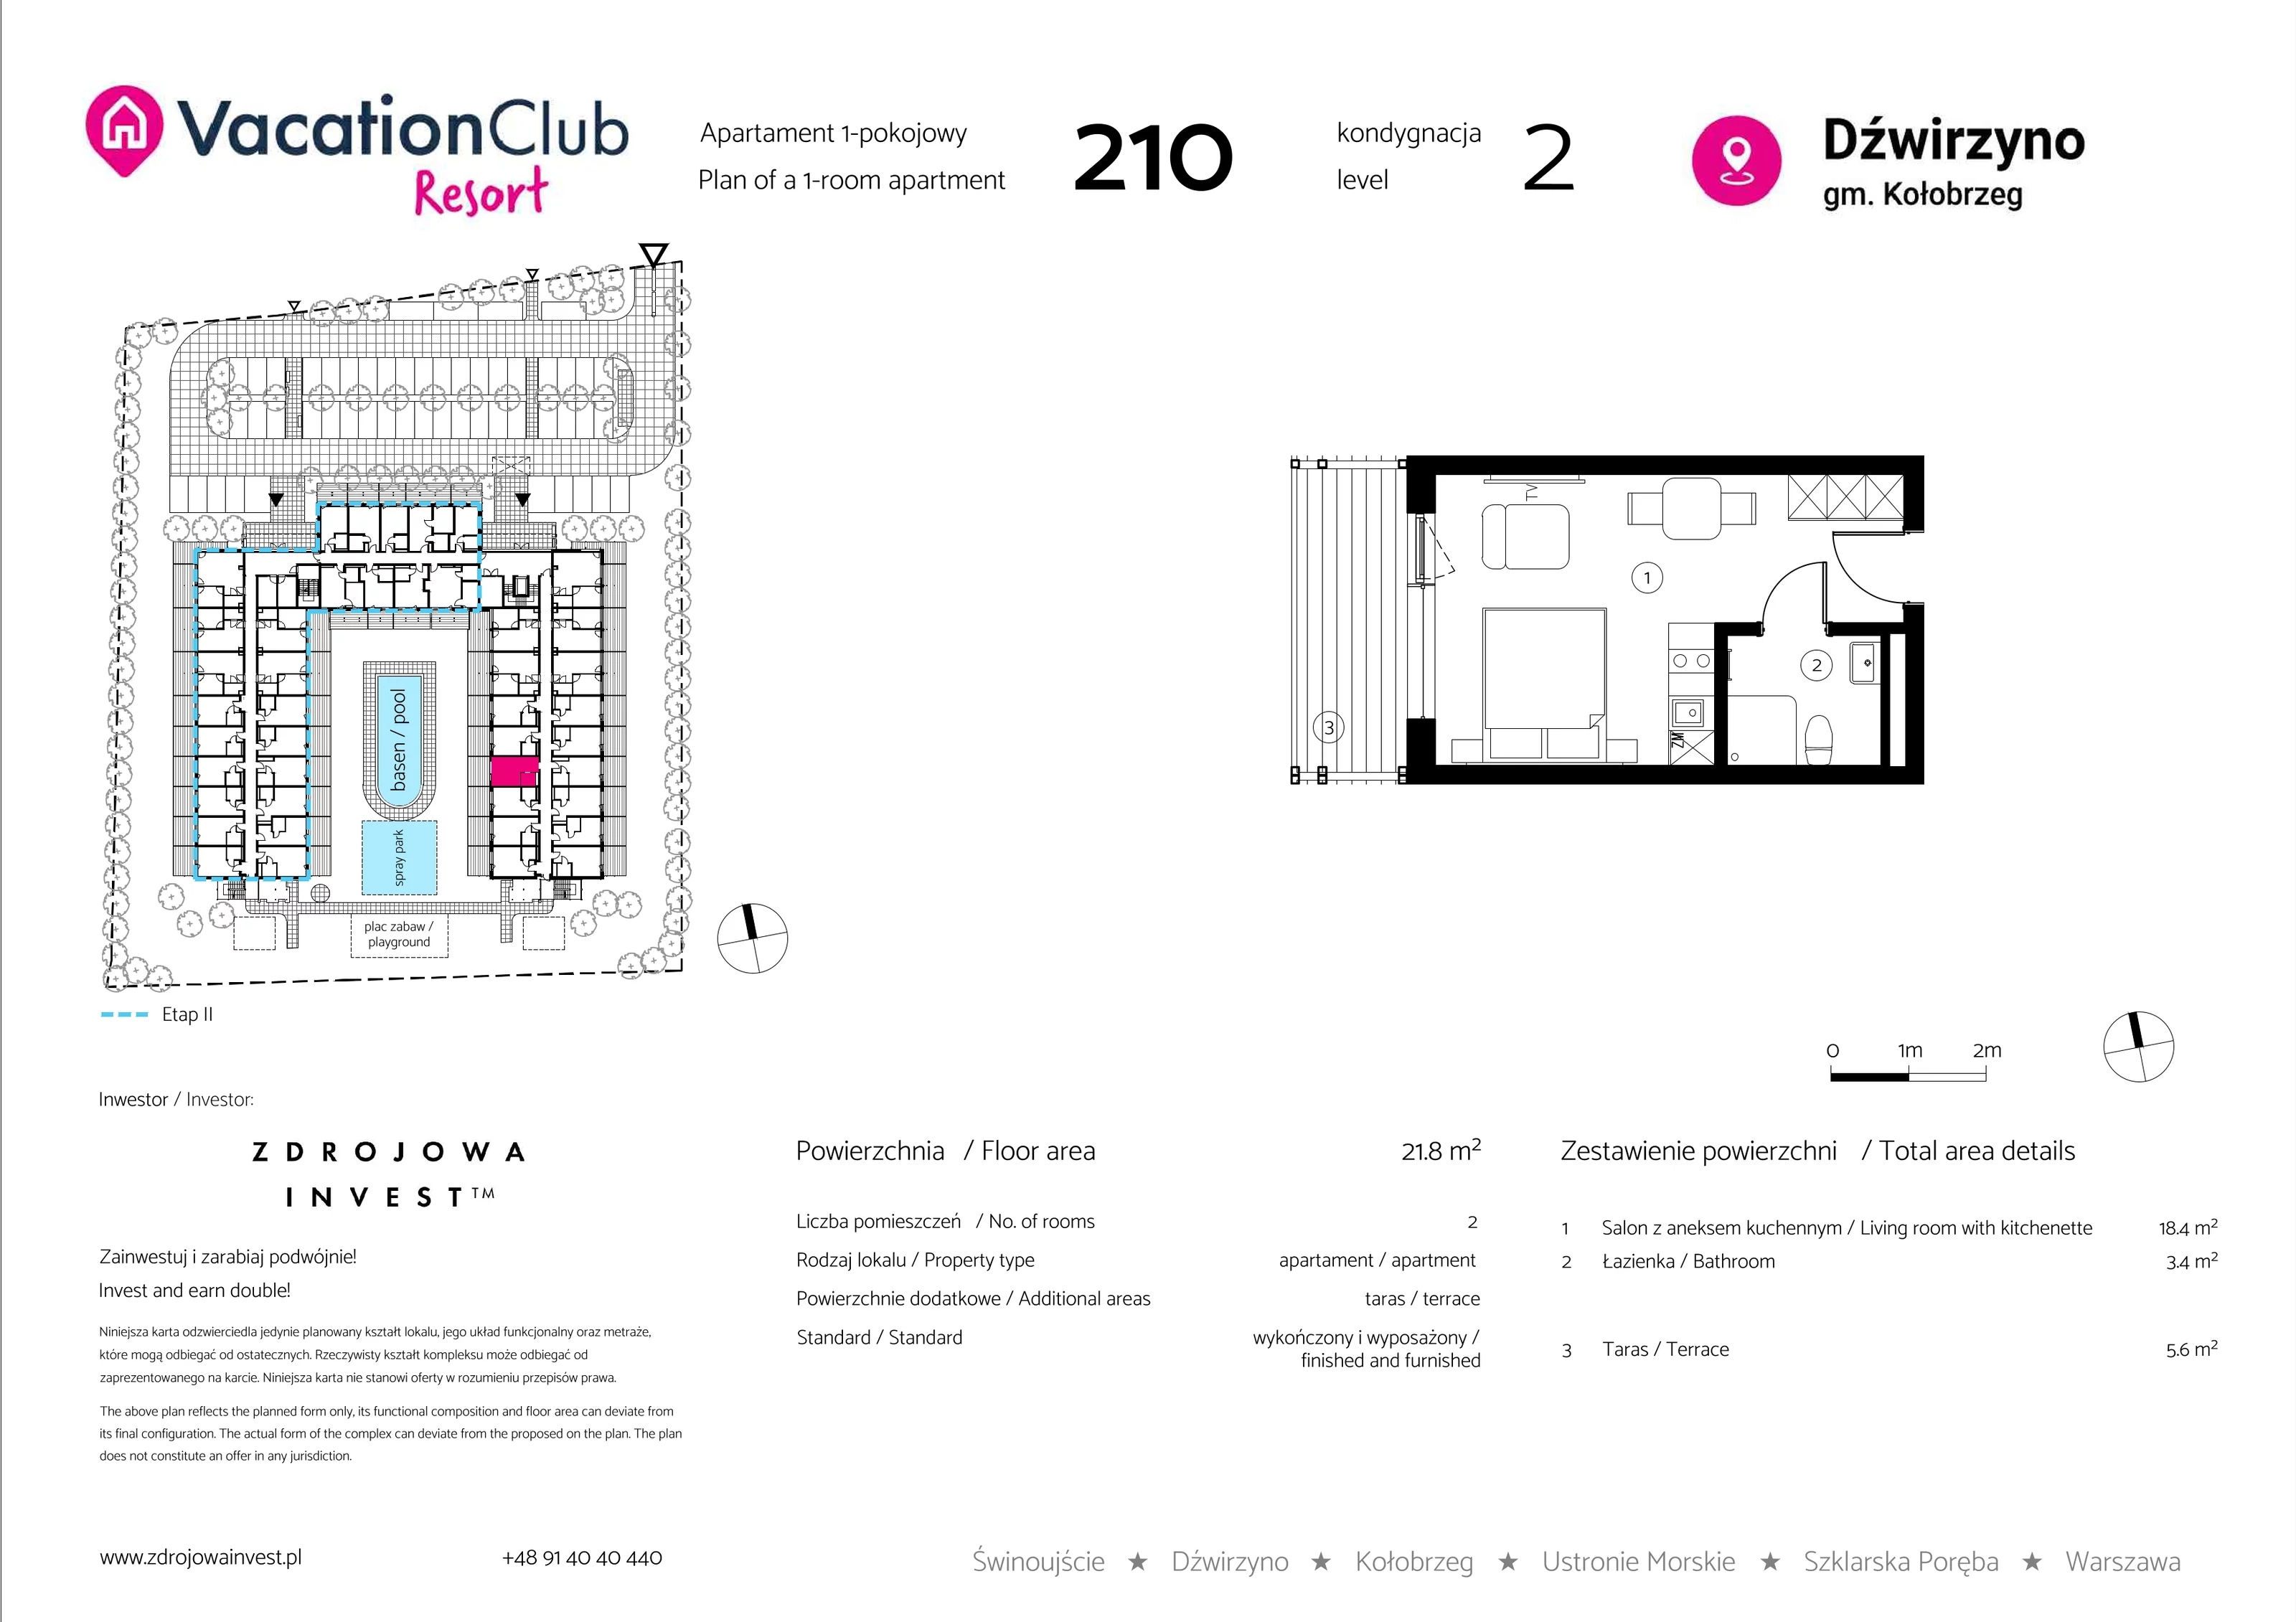 Apartament 21,80 m², piętro 1, oferta nr 210, Vacation Club Resort - apartamenty wakacyjne, Dźwirzyno, ul. Wczasowa 8